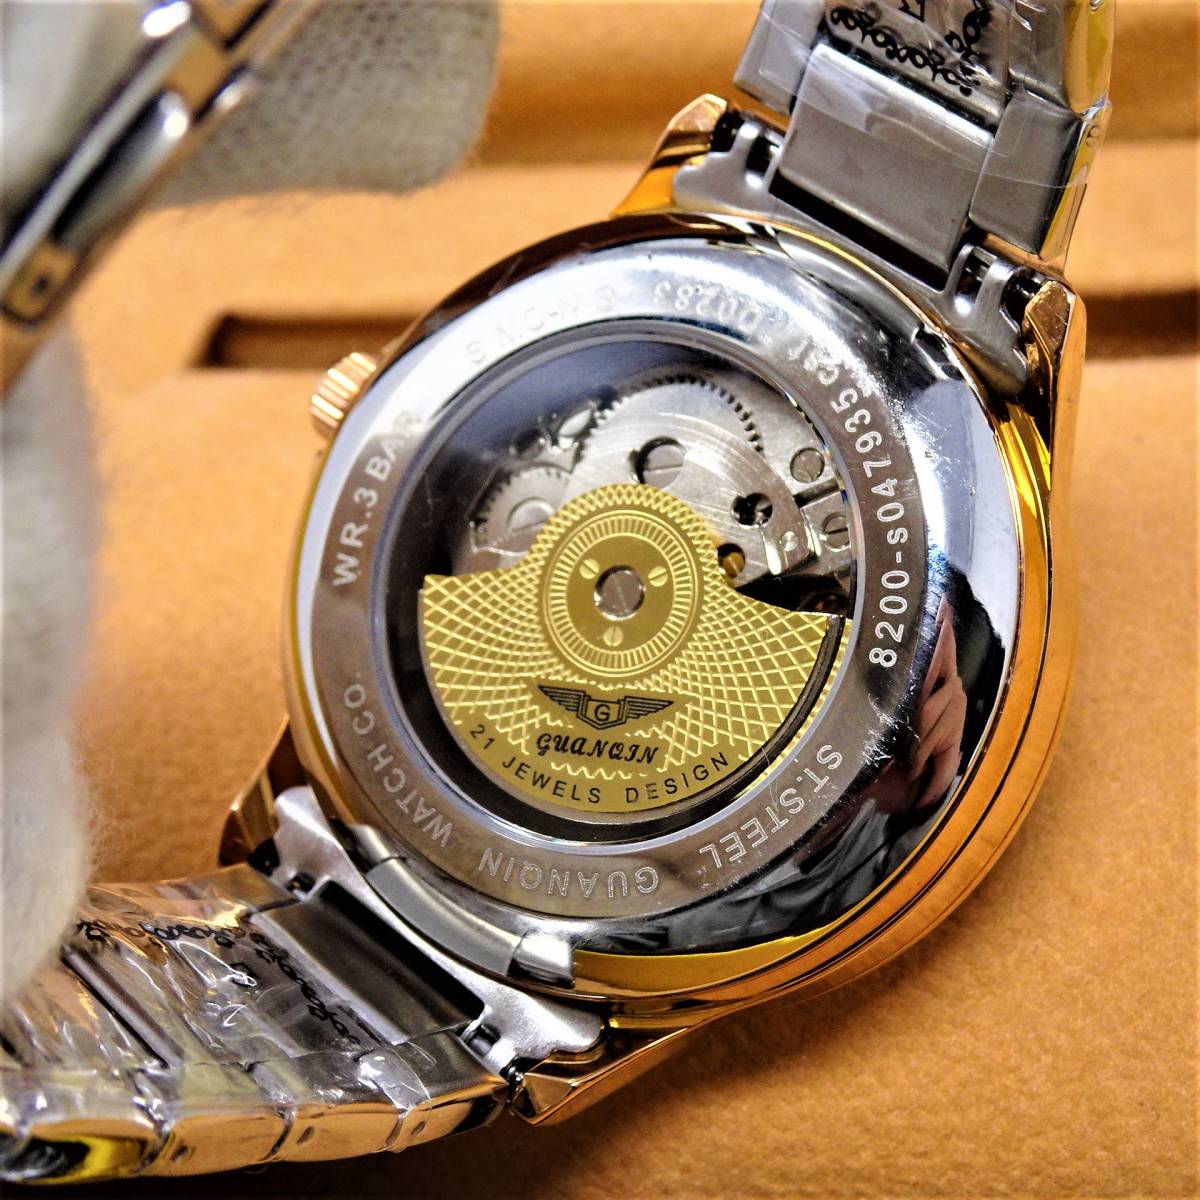 未使用・新品・GUANQINブランド・トゥールビヨンデザインautomatic機械式腕時計・ステンレス製コンビカラーモデル_画像3